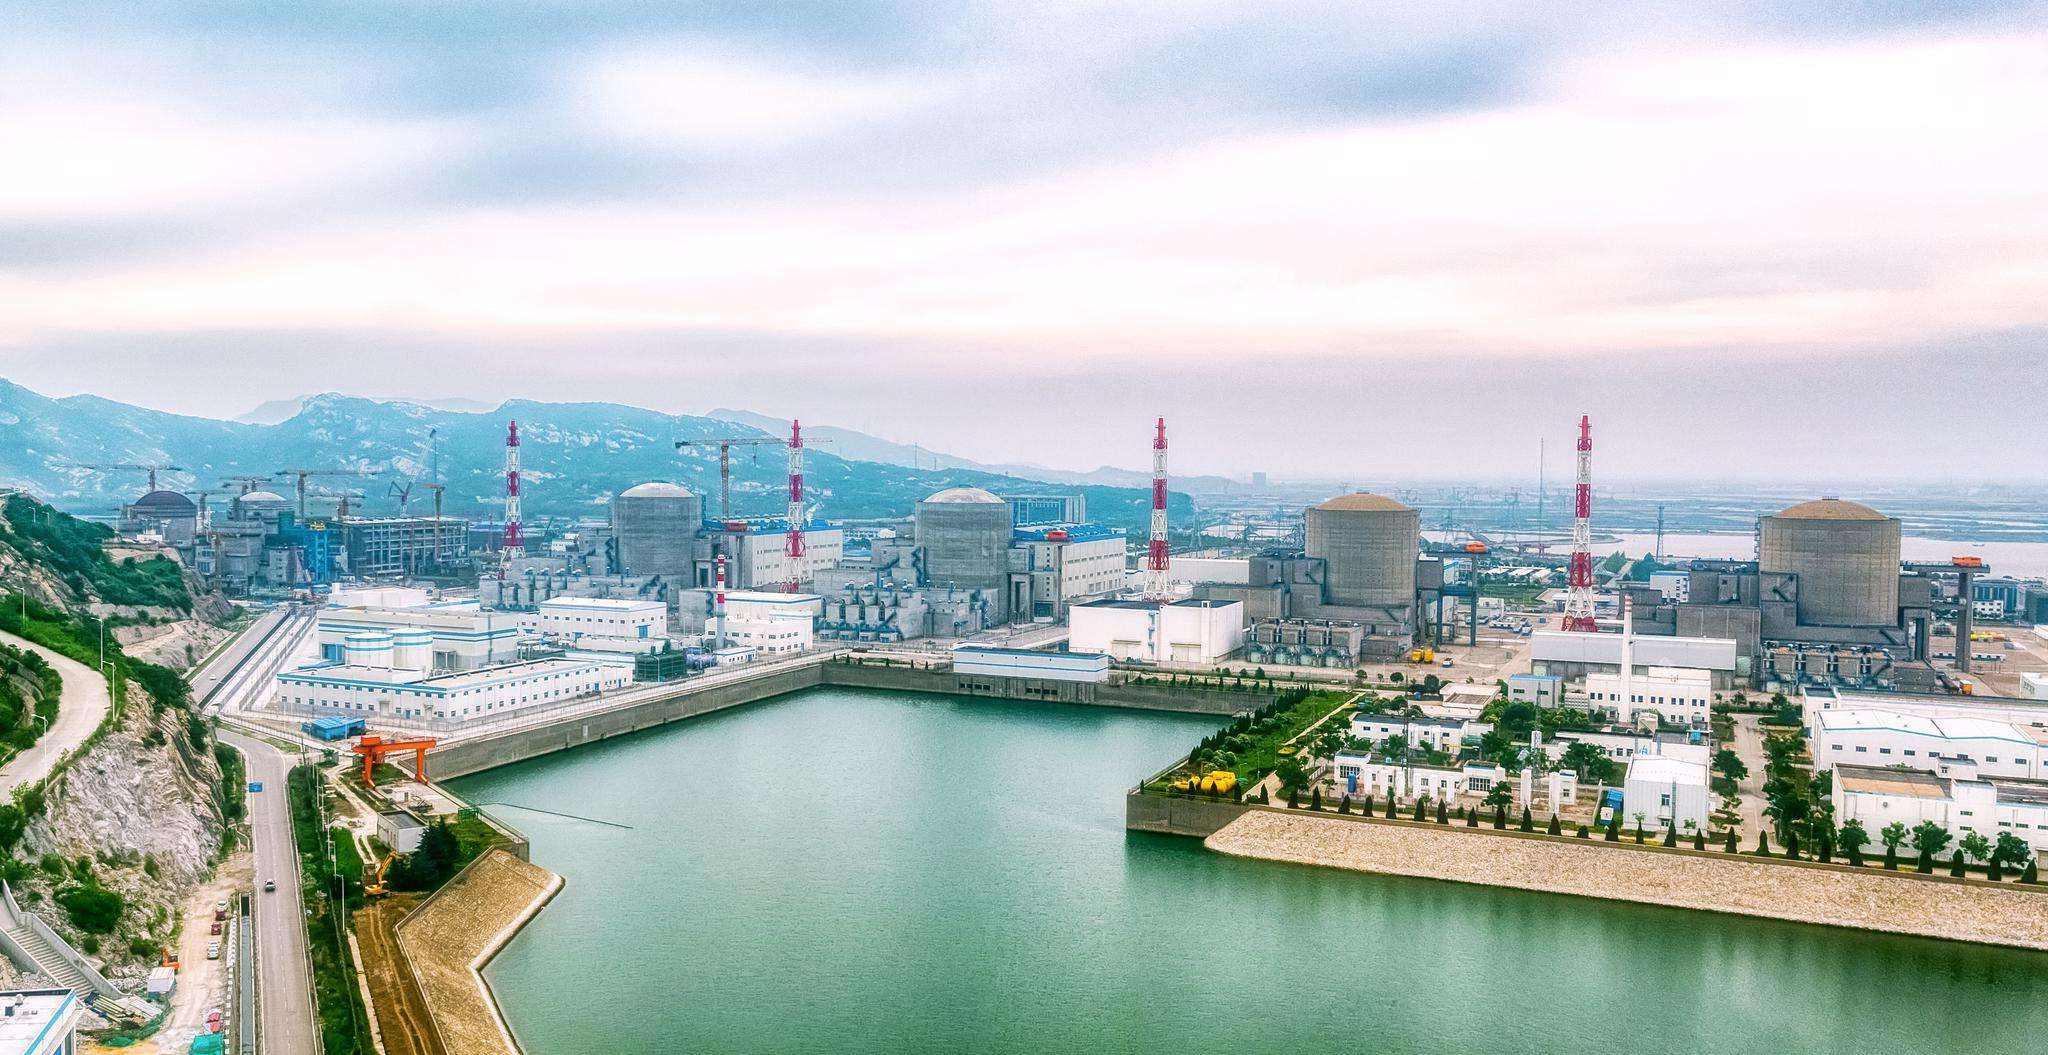 Tianwan Nuclear Power Plant in Jiangsu Province